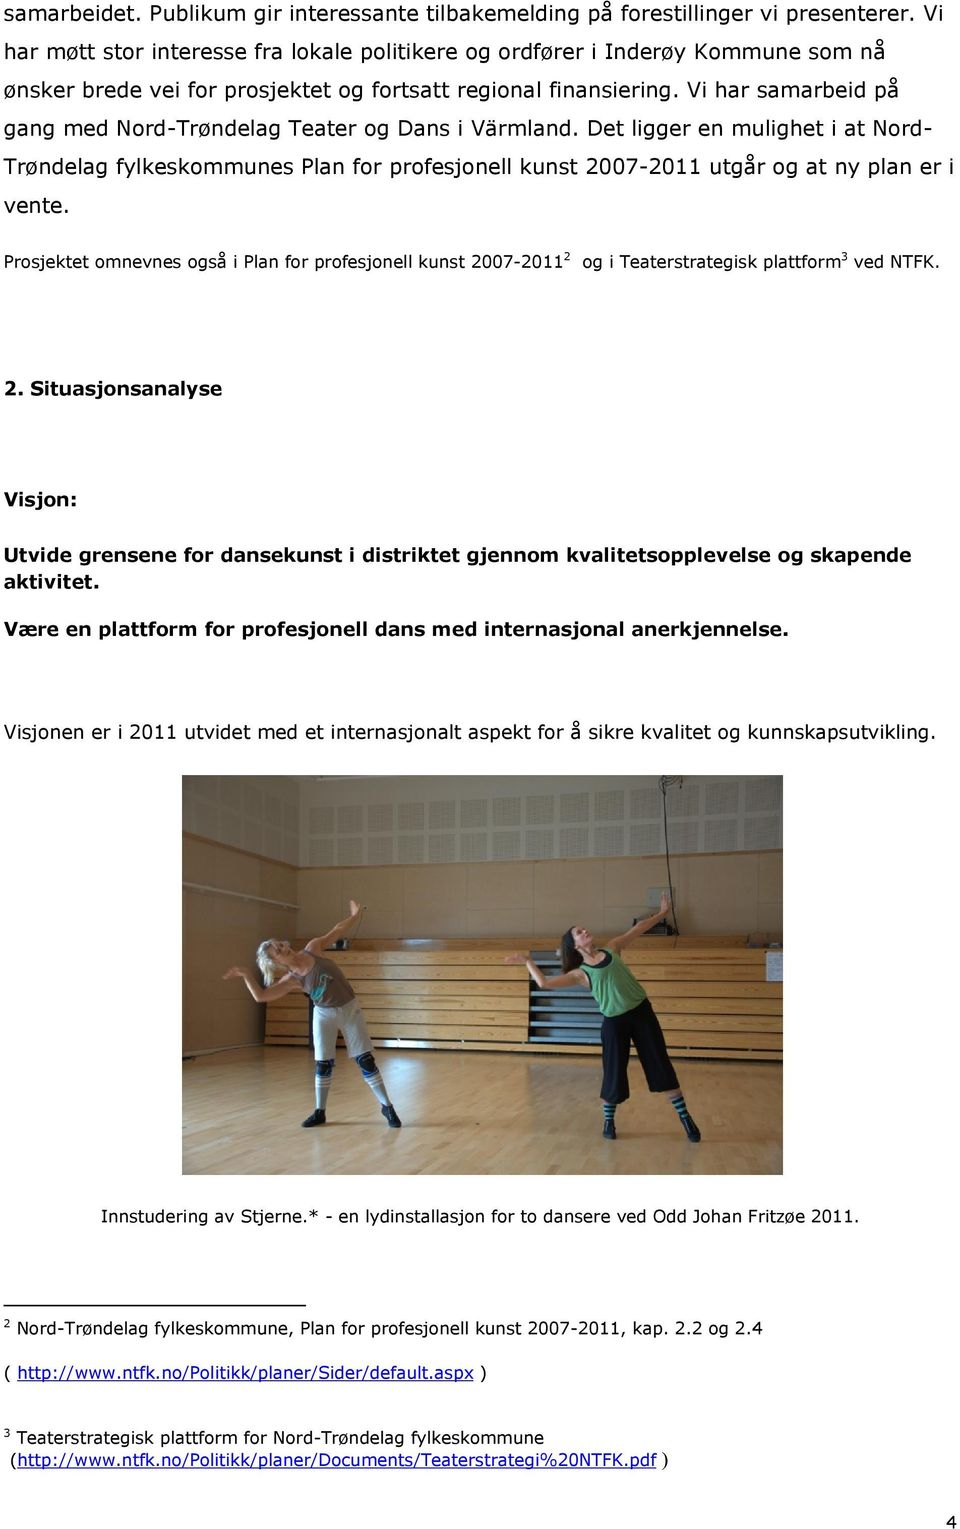 Vi har samarbeid på gang med Nord-Trøndelag Teater og Dans i Värmland. Det ligger en mulighet i at Nord- Trøndelag fylkeskommunes Plan for profesjonell kunst 2007-2011 utgår og at ny plan er i vente.